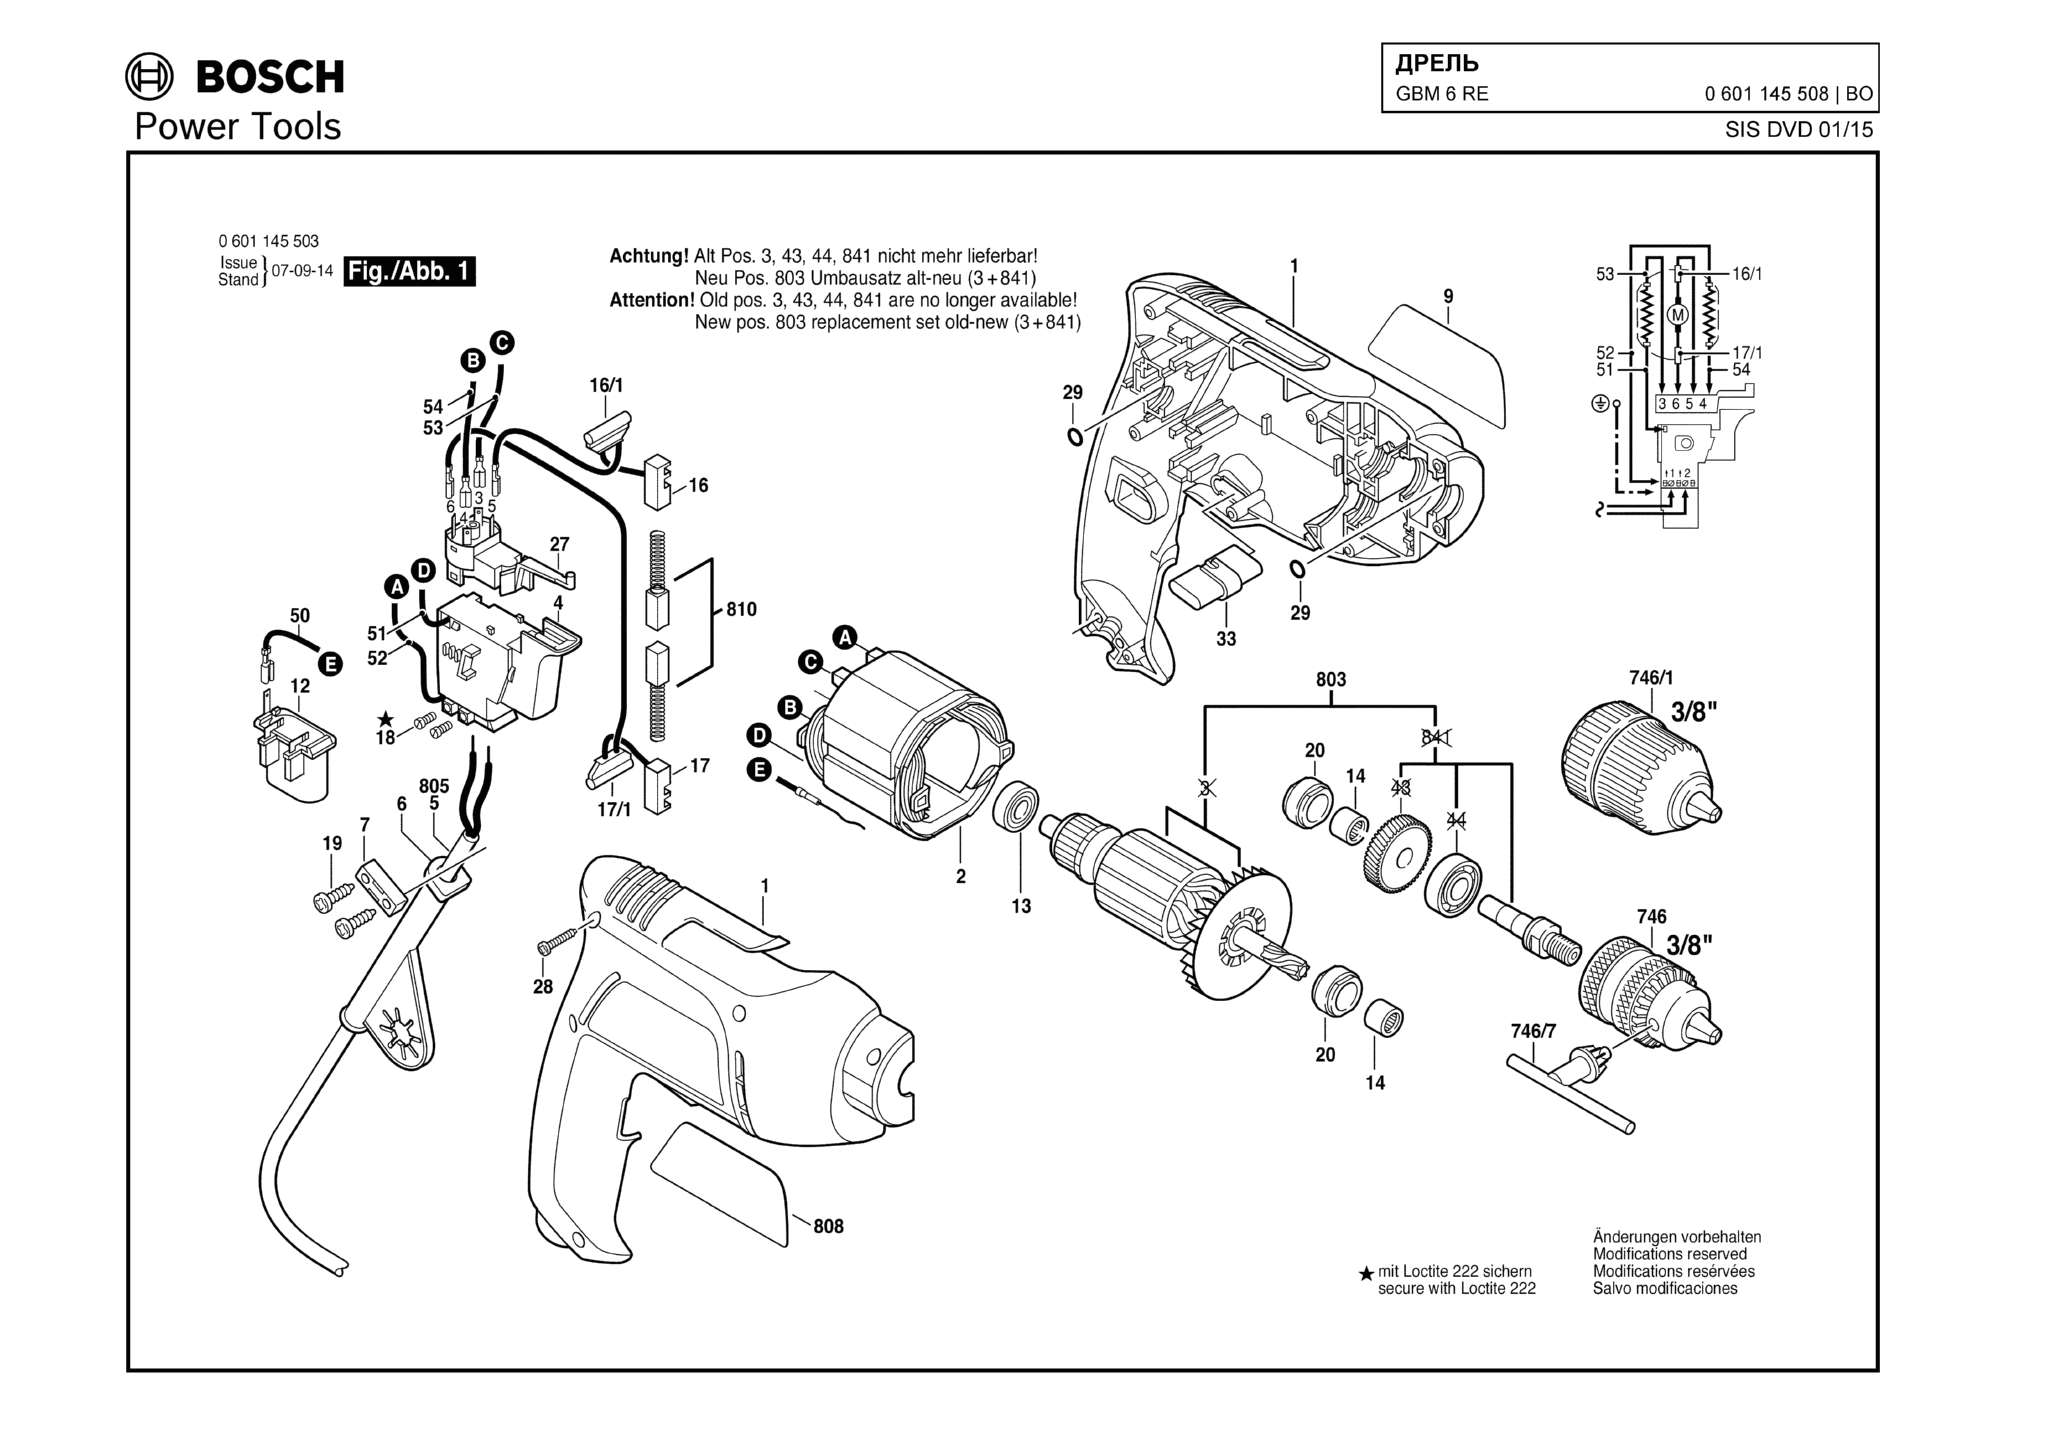 Запчасти, схема и деталировка Bosch GBM 6 RE (ТИП 0601145508)